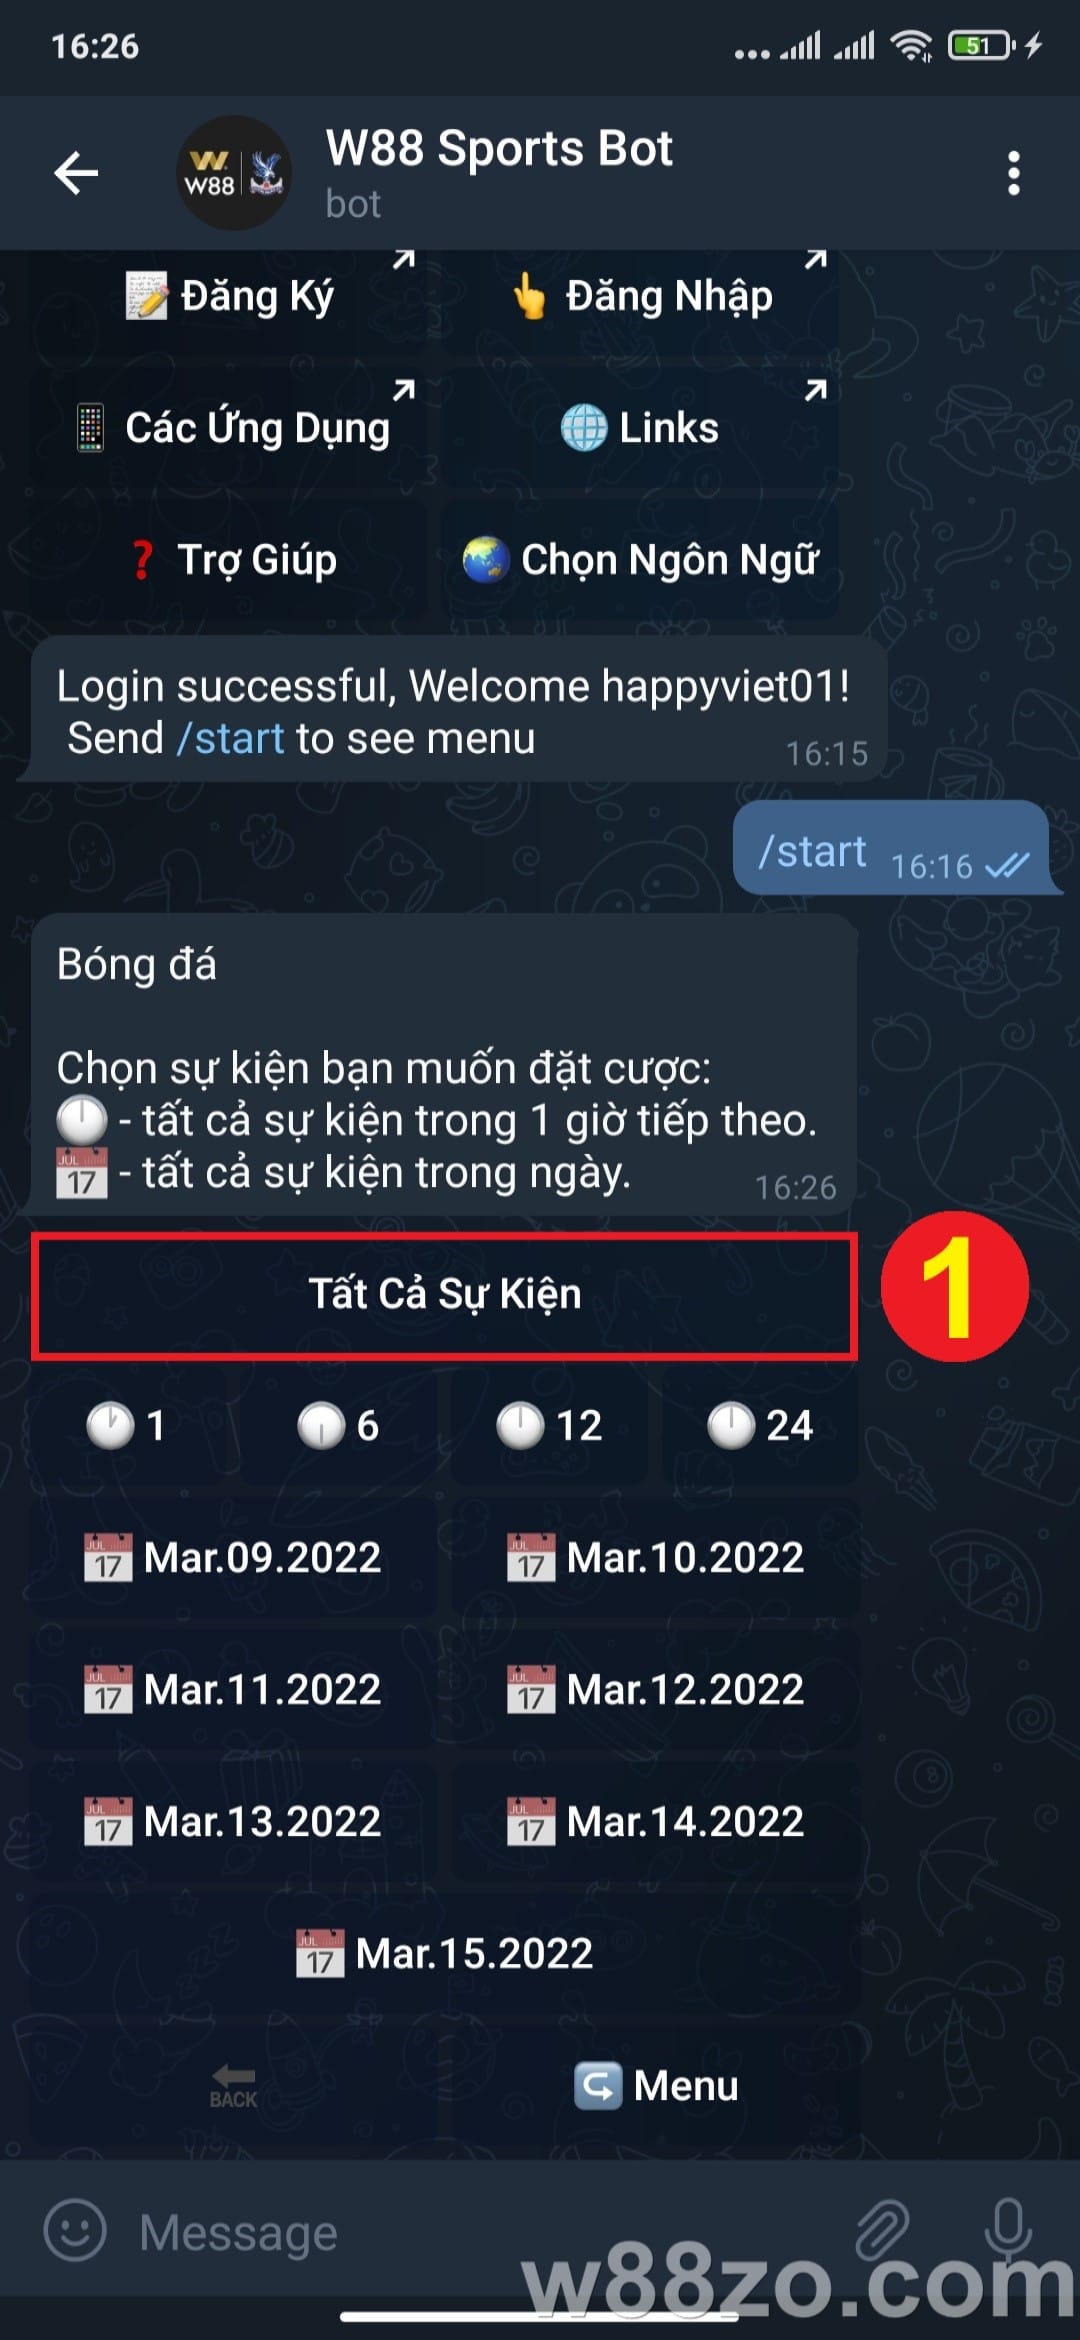 Hướng dẫn sử dụng Telegram W88 đặt cược thể thao nhanh chóng (11)